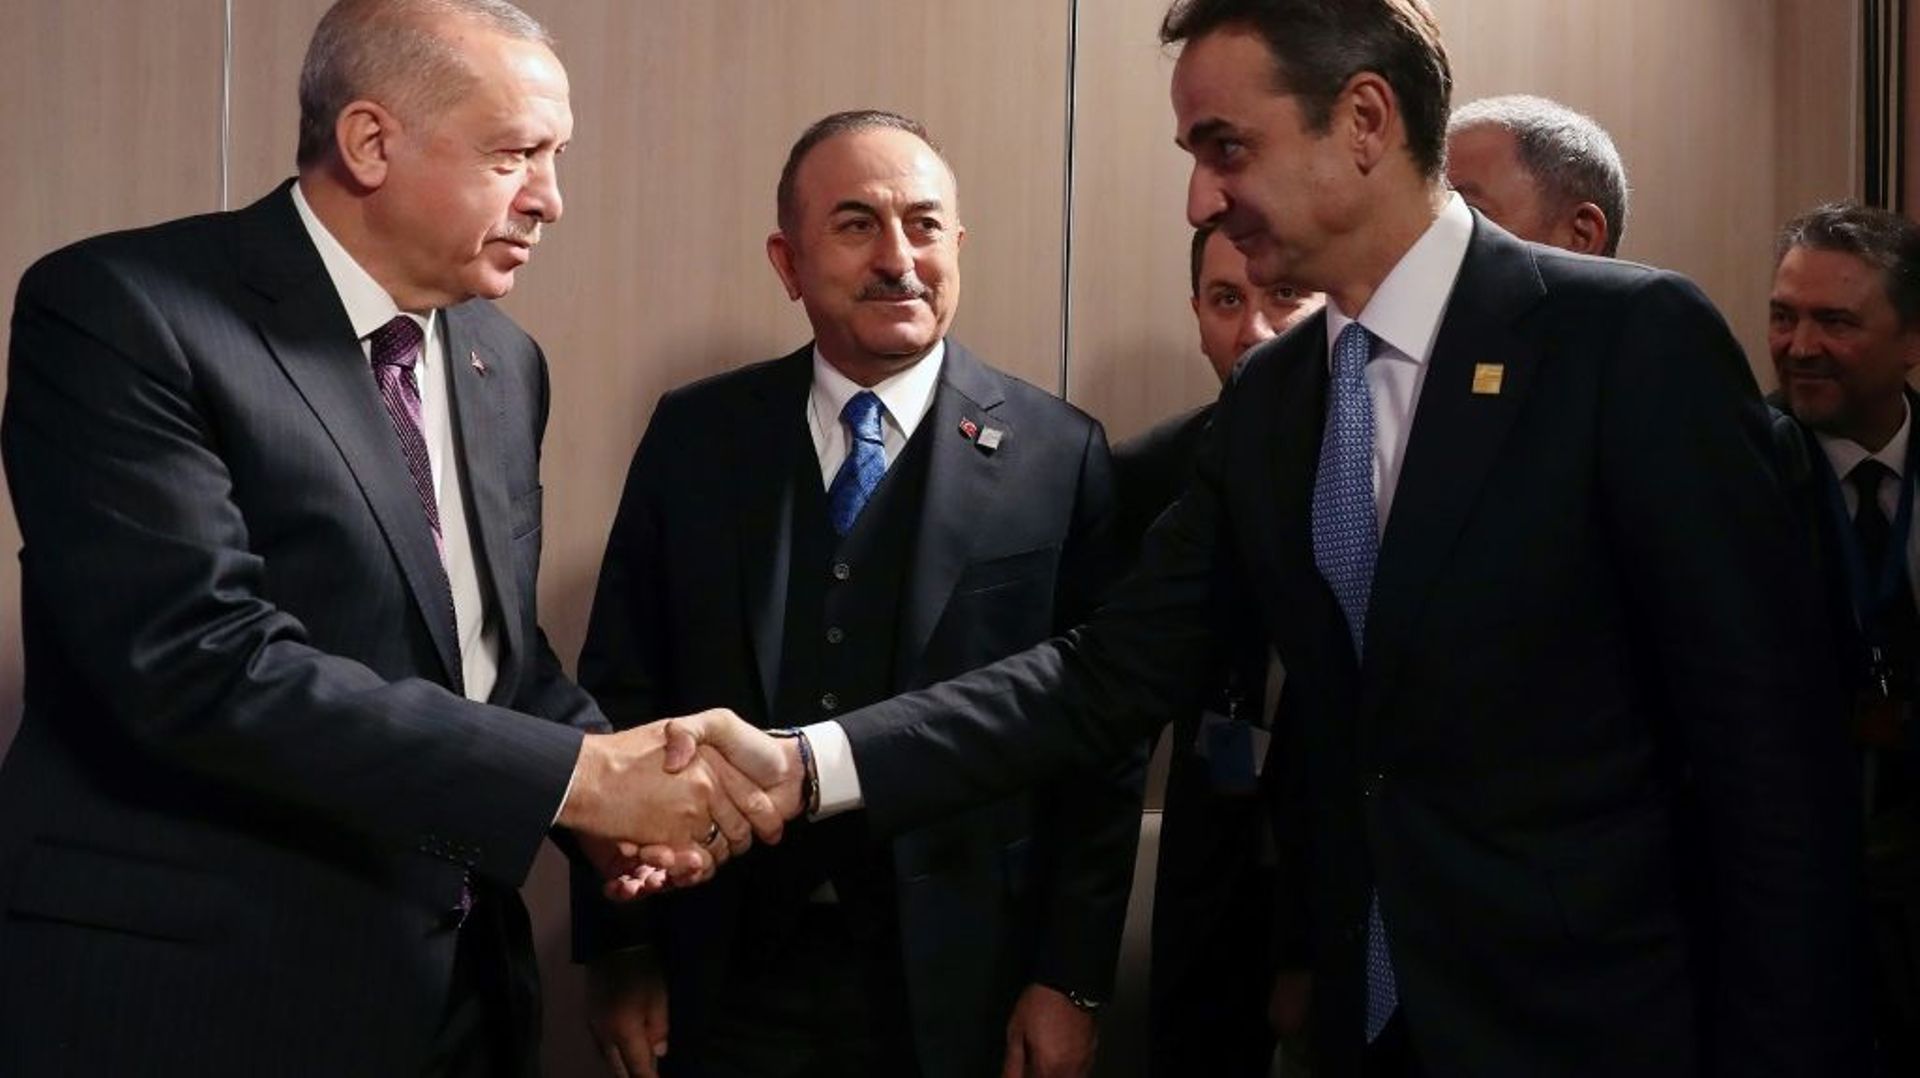 Le président turc Recep Tayyip Erdogan (à gauche) serre la main du Premier ministre grec Kyriakos Mitsotakis, le 4 décembre 2019 lors d’un sommet de l’Otan à Londres